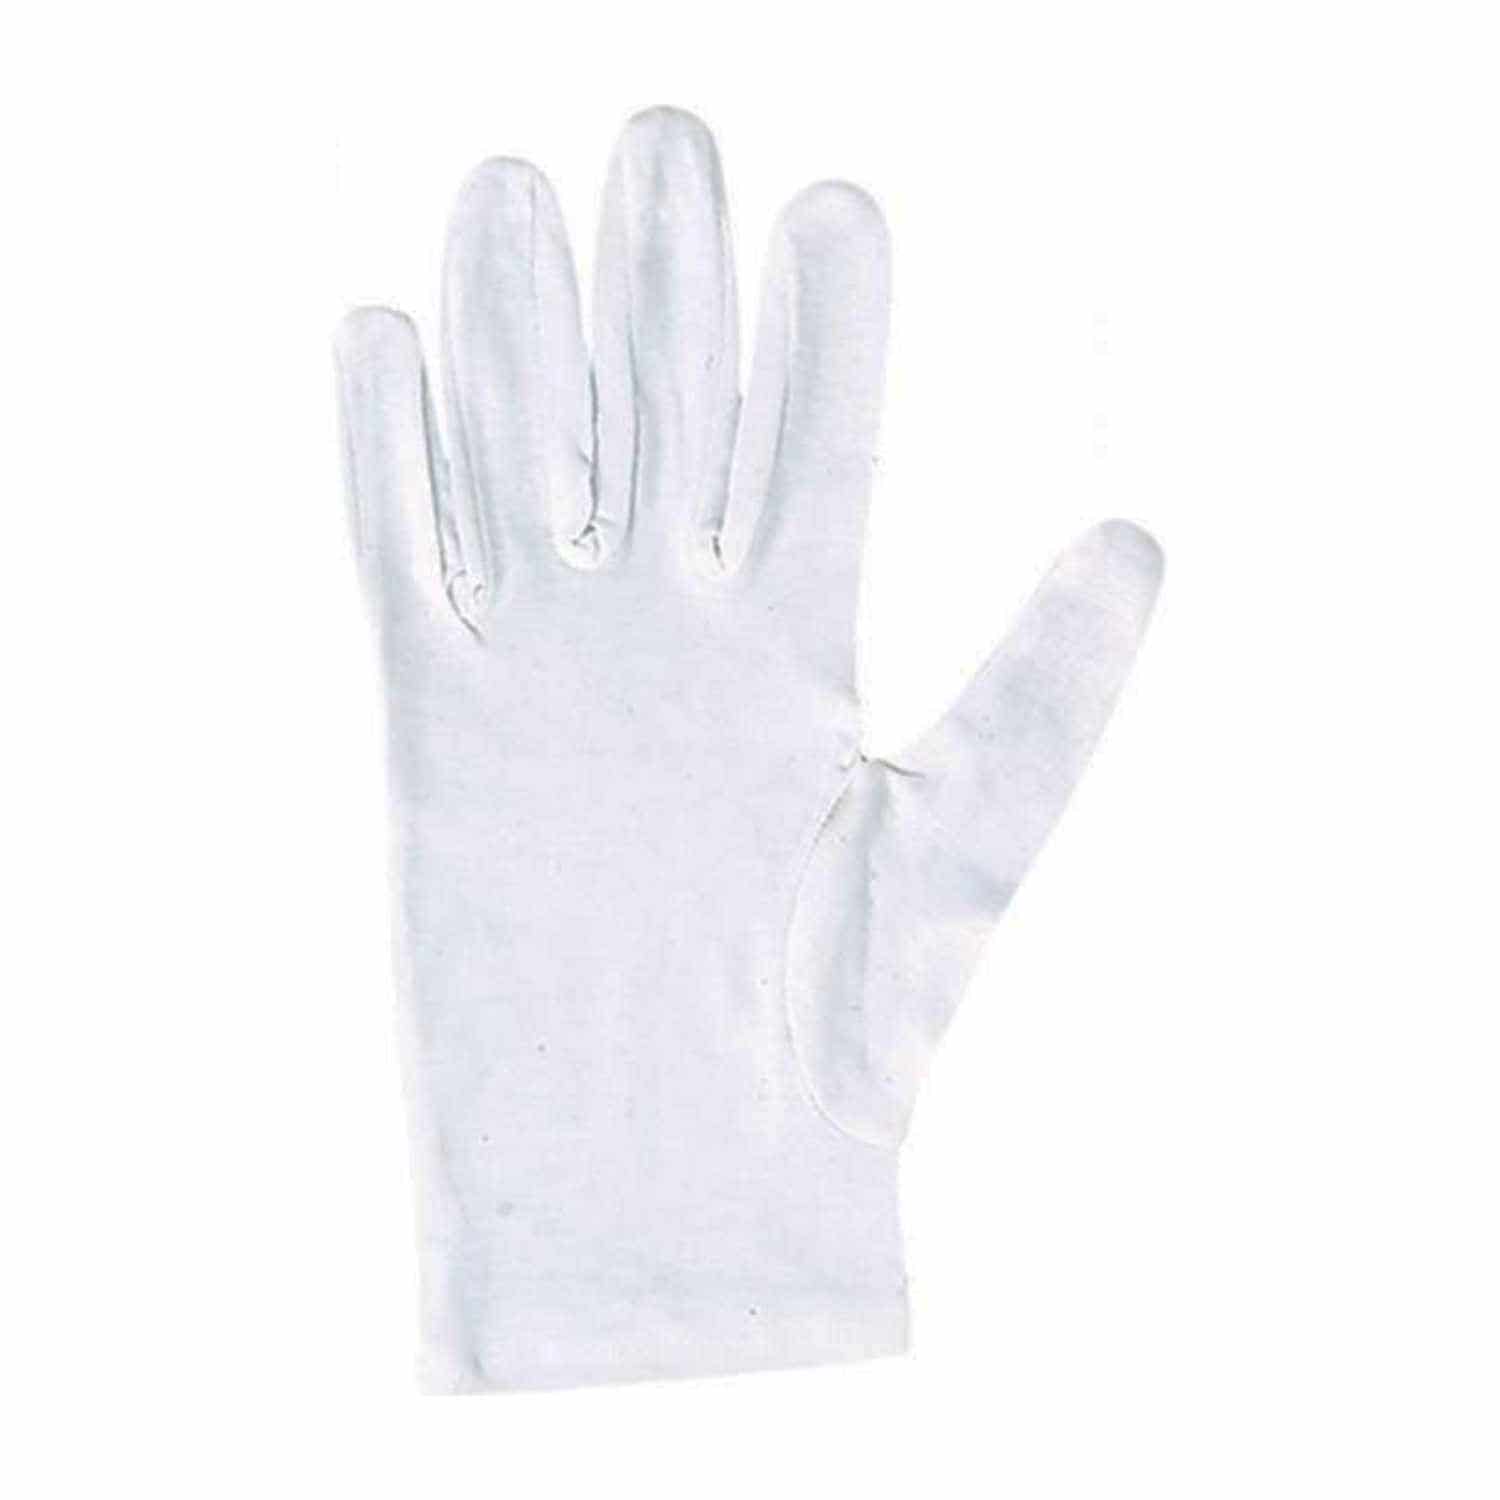 Handschuhe - weiss Baumwolle Gr. 8 (M)  -  Pack à 10 Paar / 120g/m2